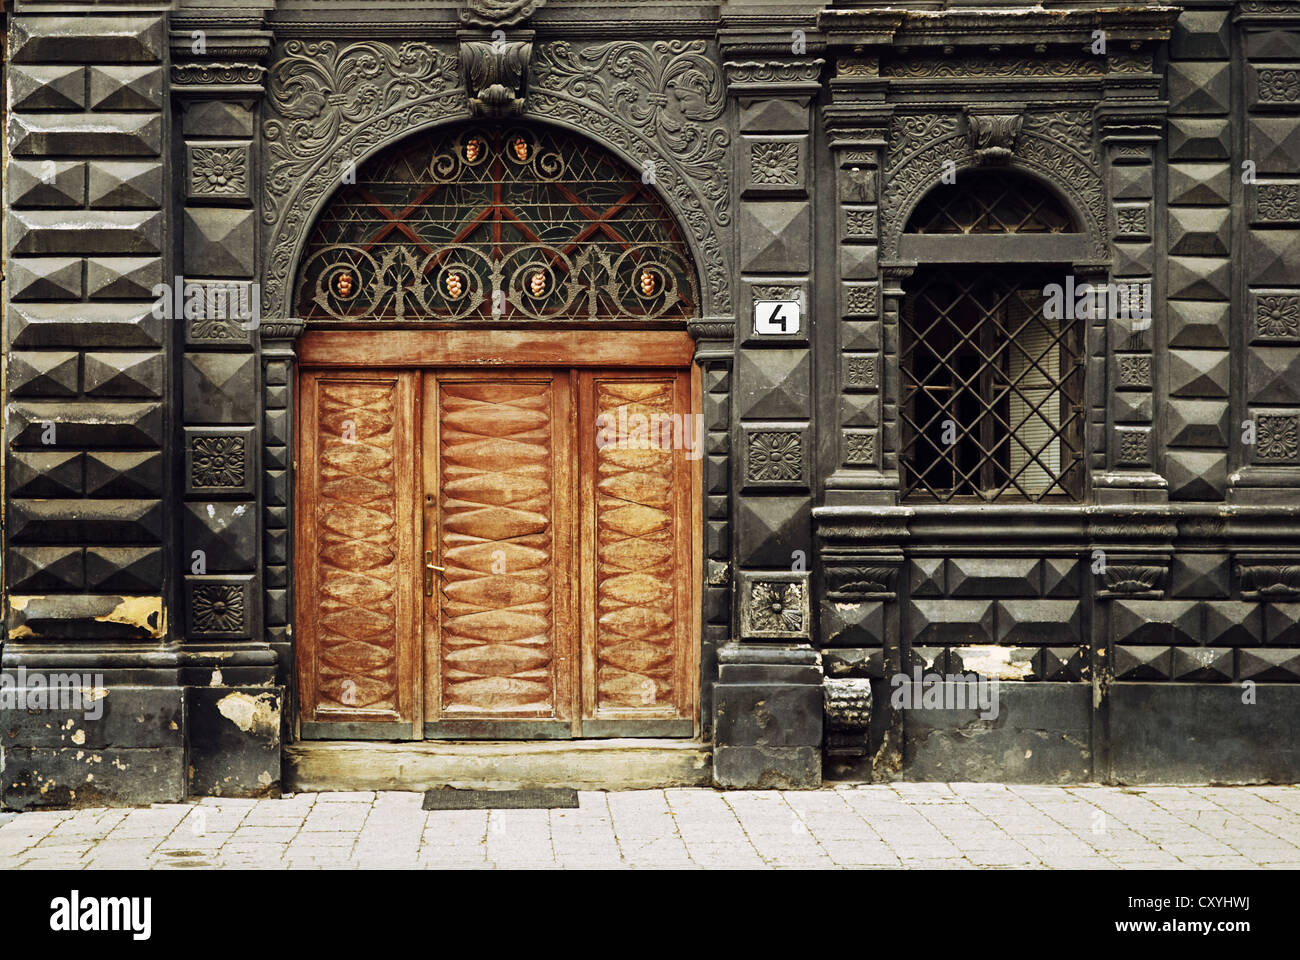 Chambre noire, Lviv, Ukraine. Porte en bois Banque D'Images